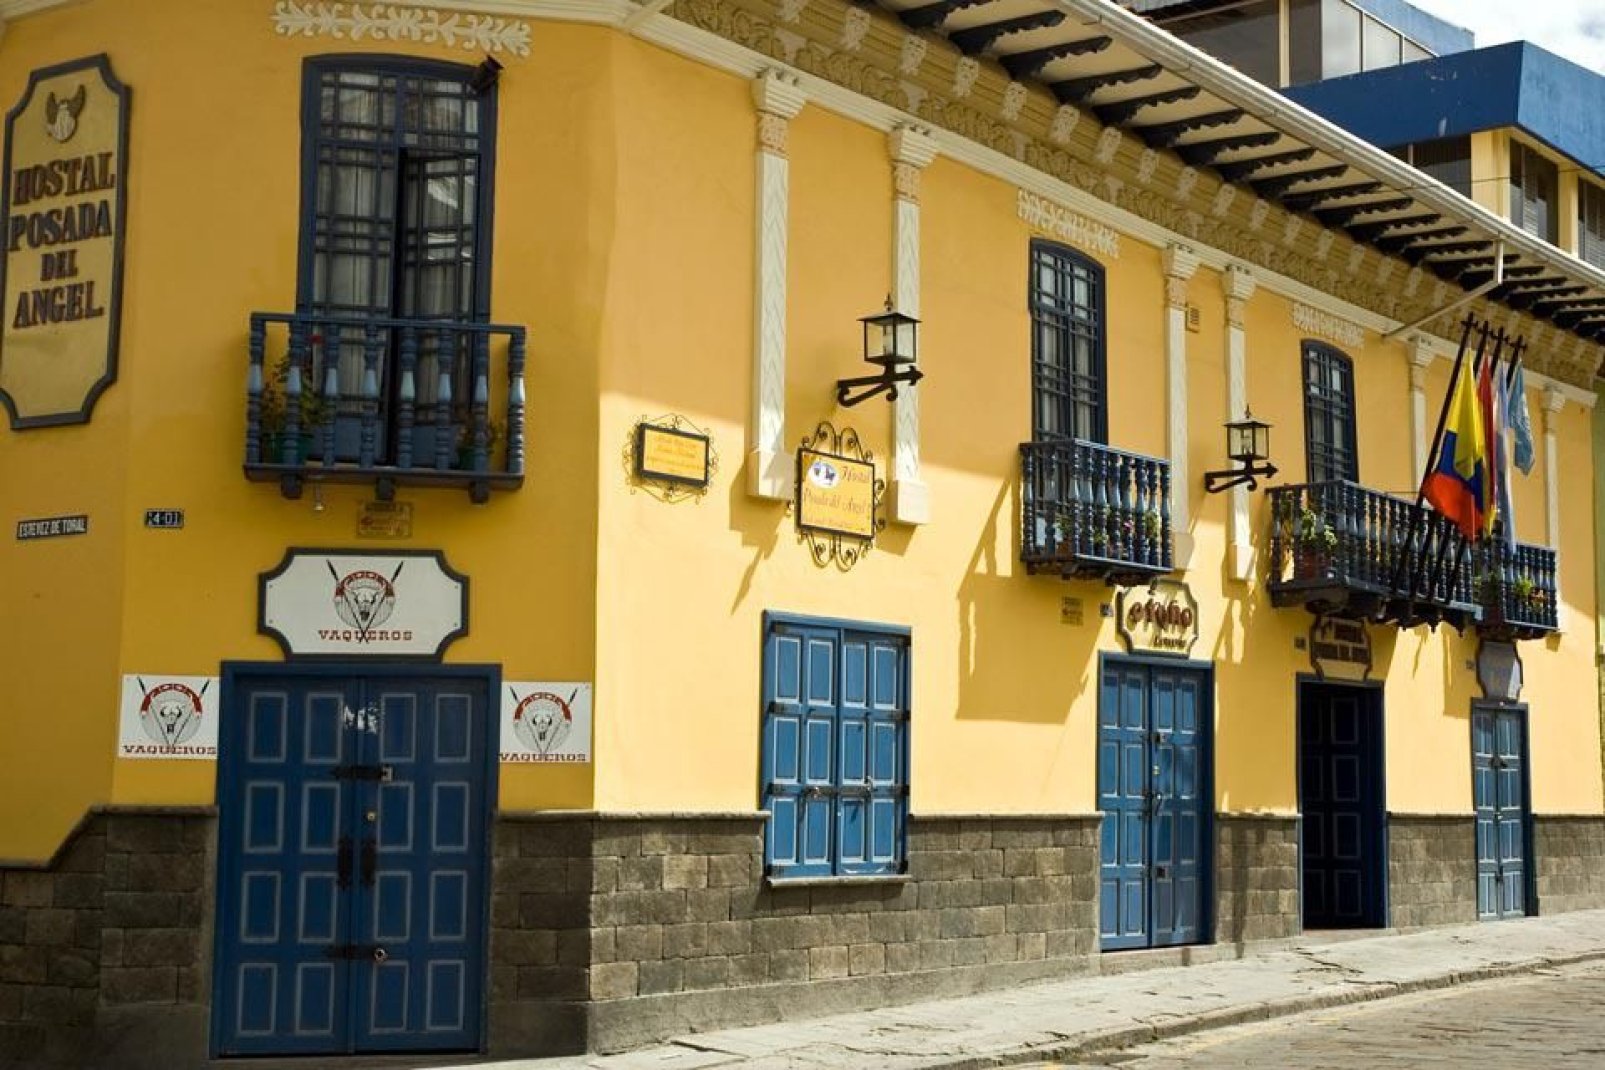 Das Hotel Posada del Angel ist ein restauriertes altes Kolonialgebude im historischen Stadtzentrum von Cuenca.